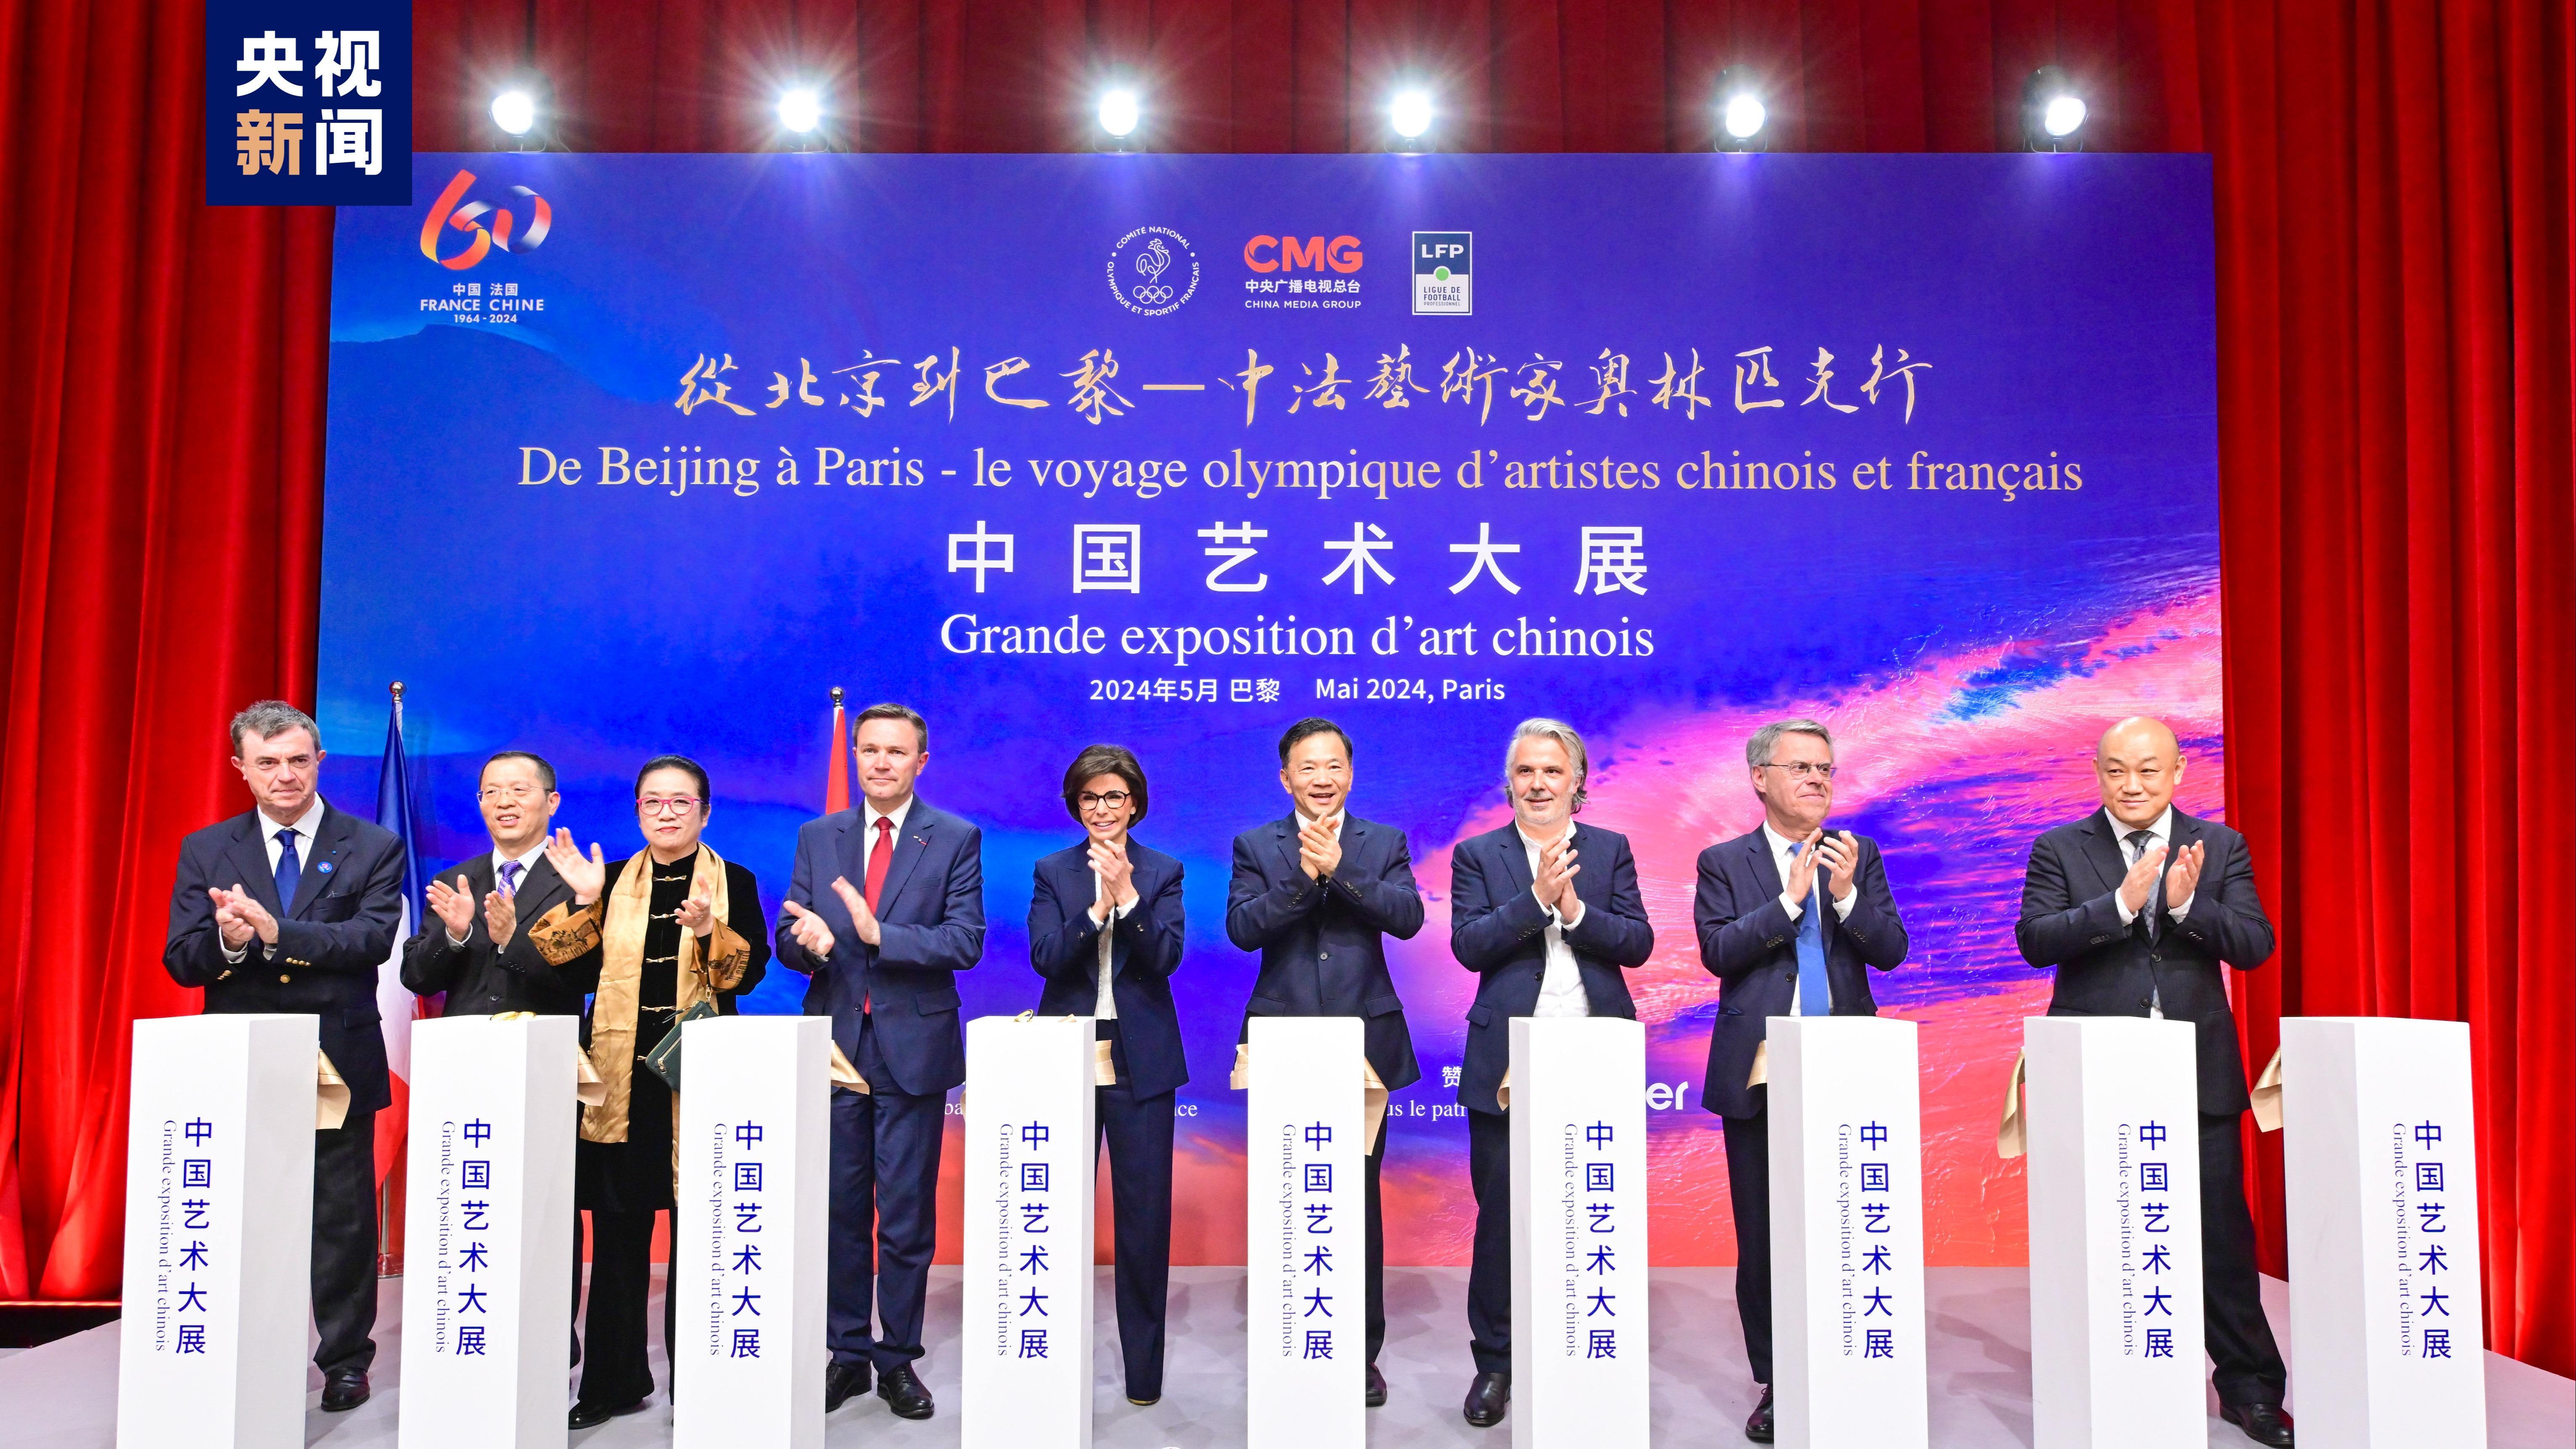 برگزاری نمایشگاه هنر چین «سی‌ام‌جی»‌ با عنوان «سفر المپیکی هنرمندان چینی و فرانسوی»ا